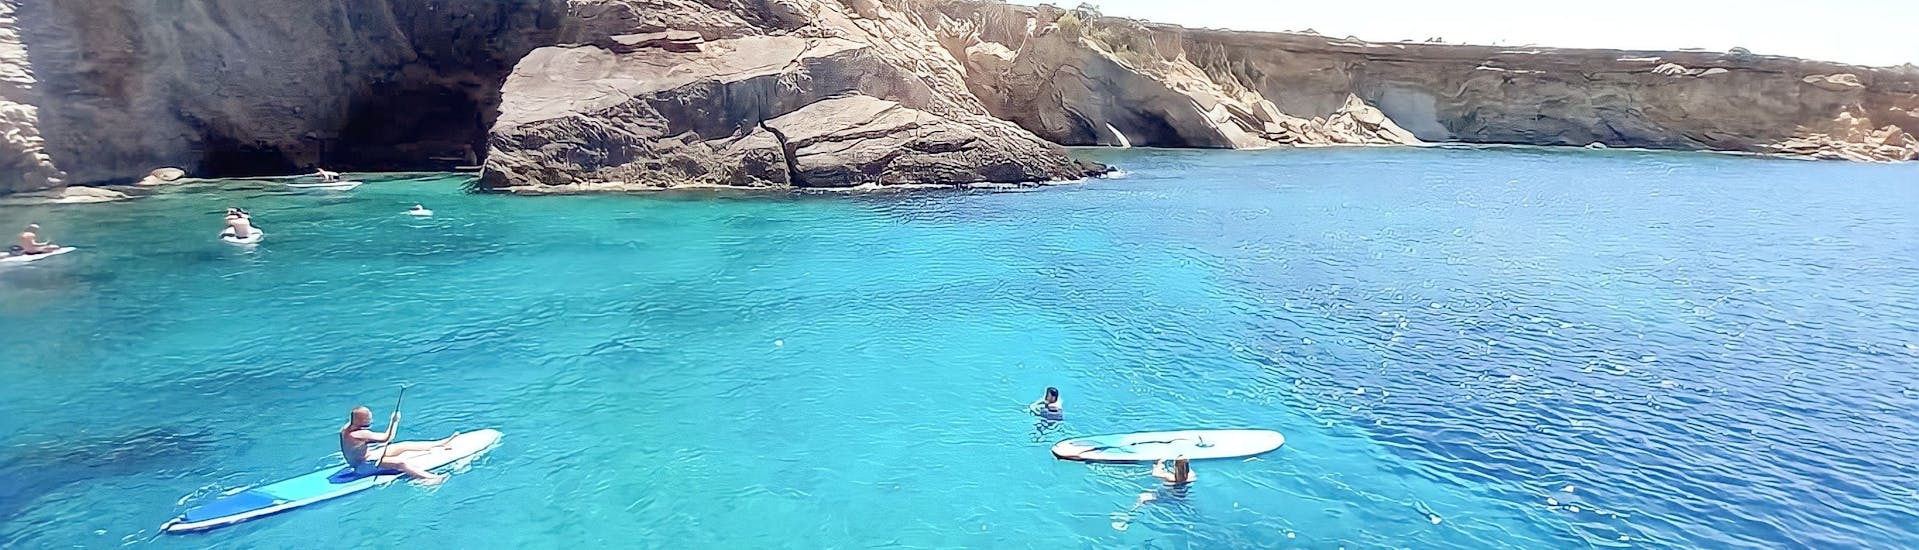 Private Bootstour entlang der Küste von Ibiza.